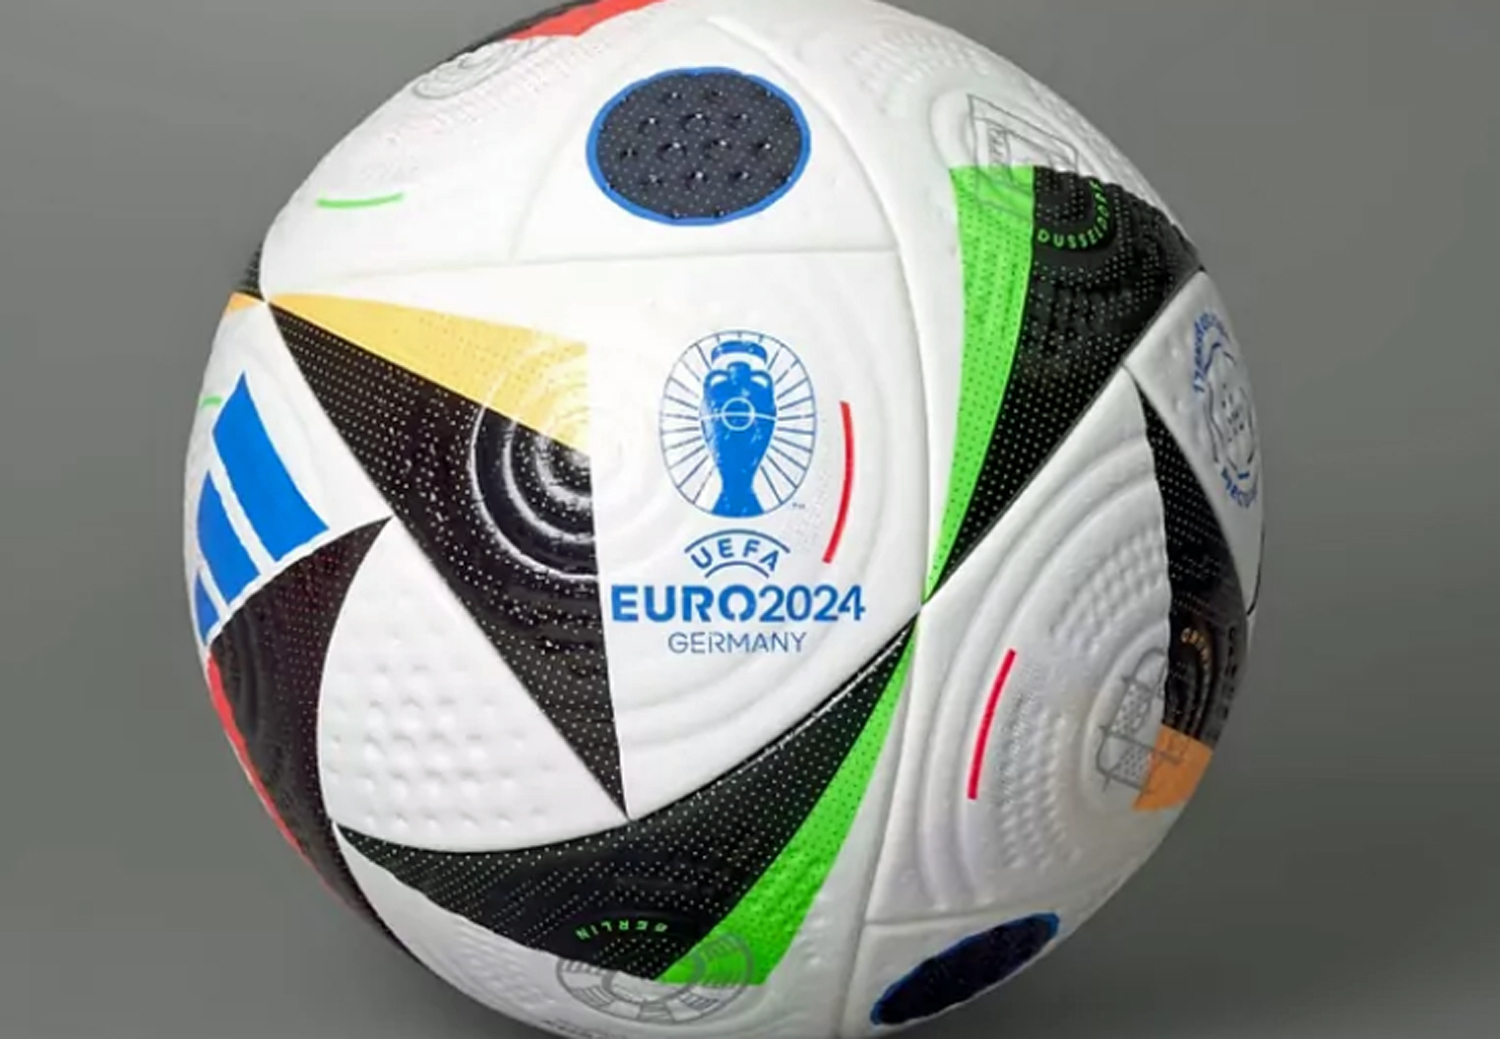 Baln oficial de la Eurocopa 2024 en Alemania.